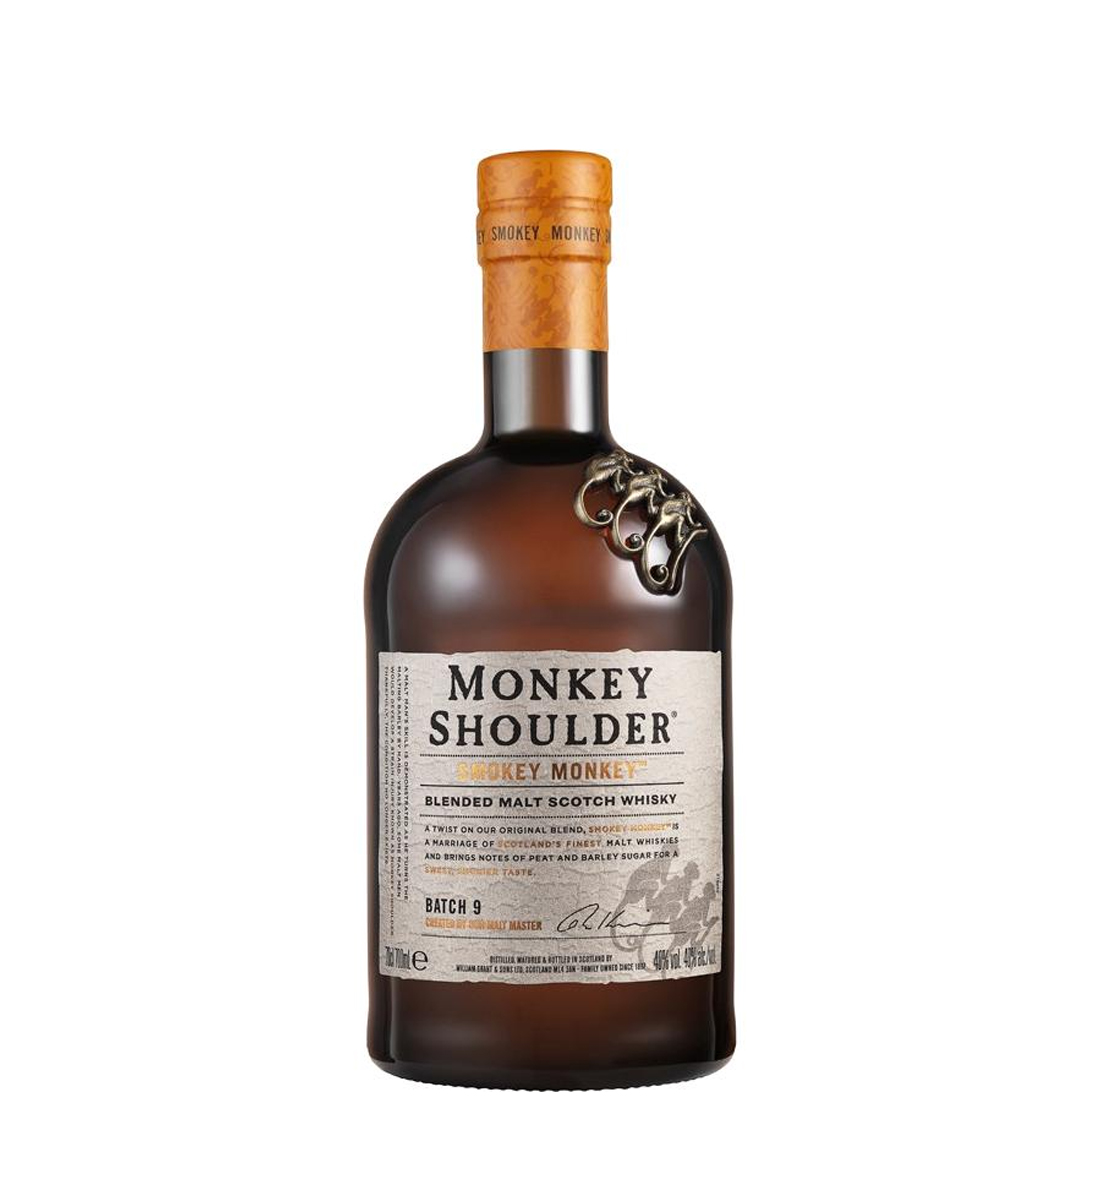 Monkey Shoulder Smokey Monkey Whisky 0.7L